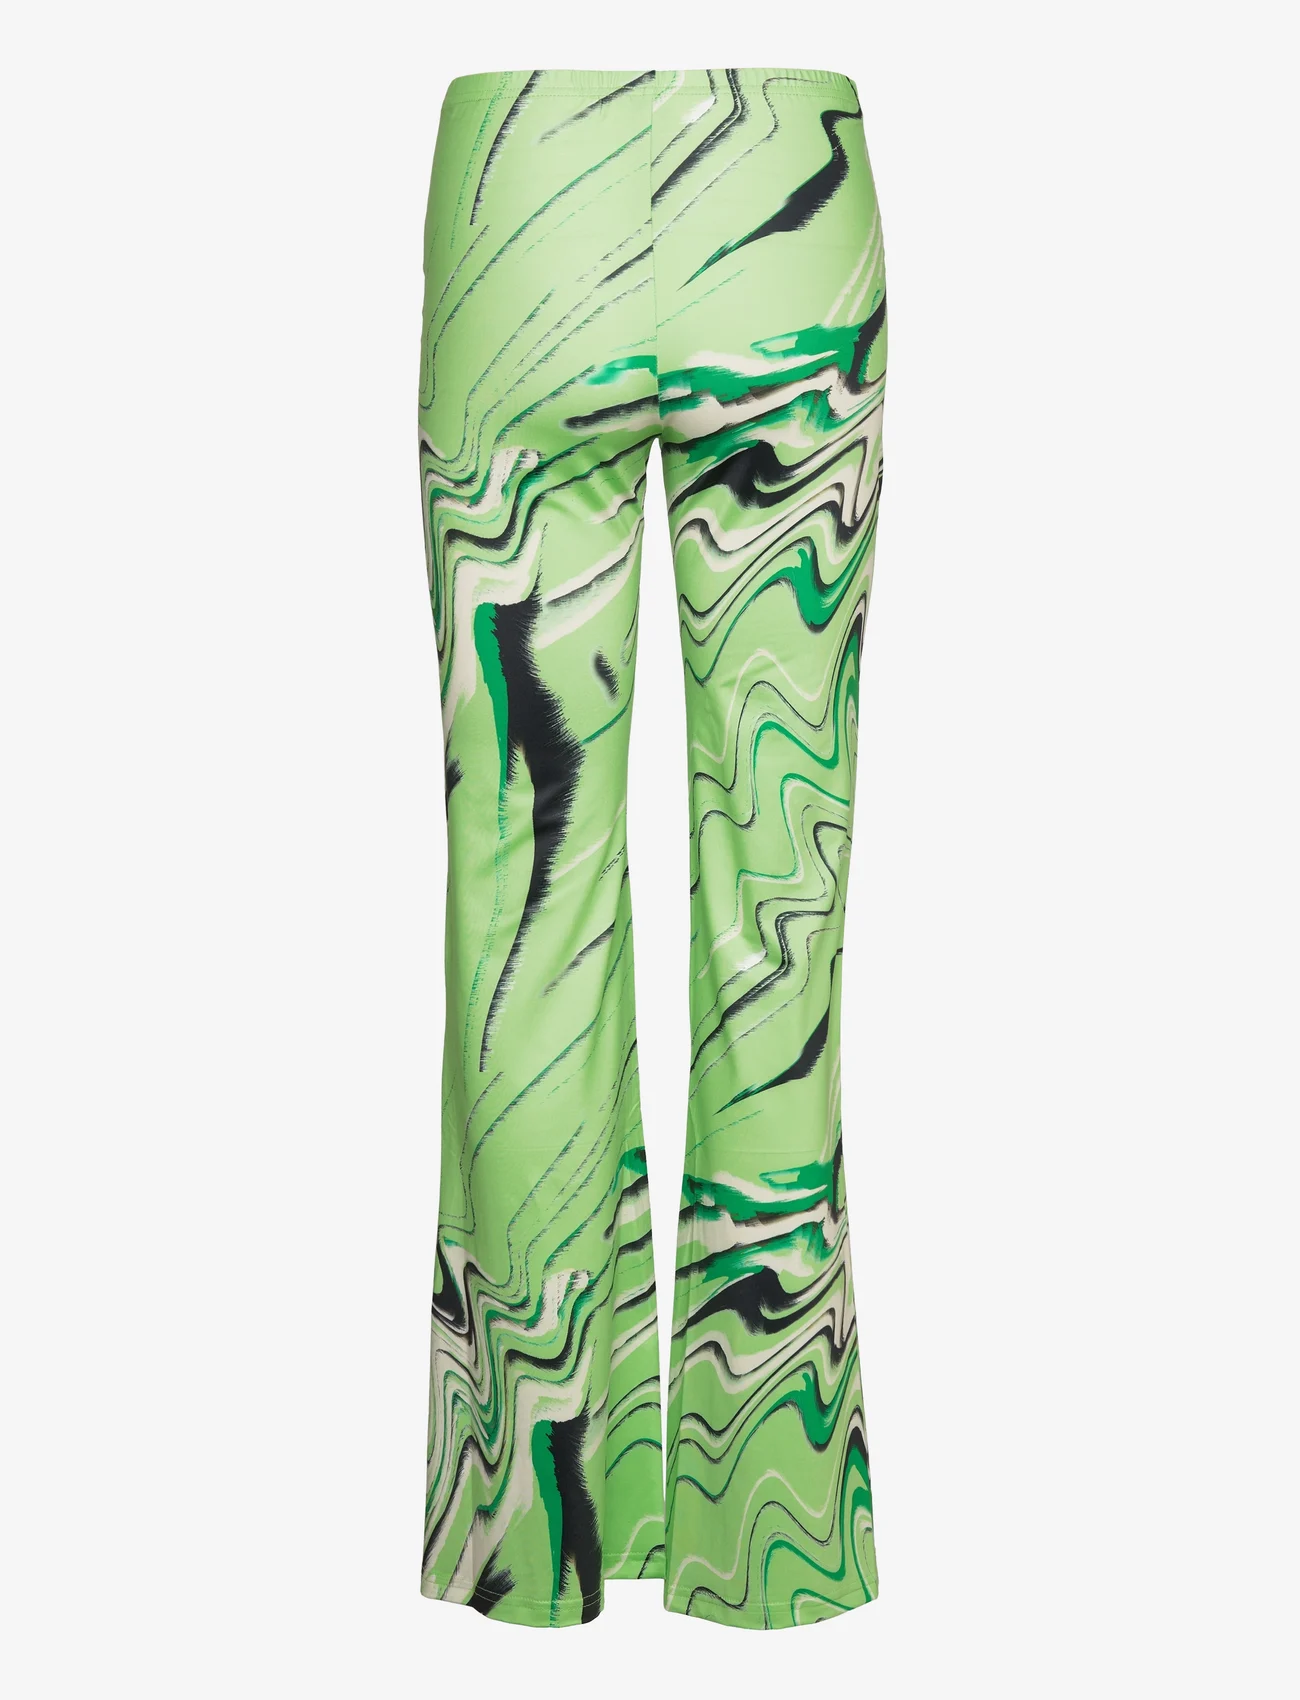 Barbara Kristoffersen by Rosemunde - Trousers - naised - green animal print - 1